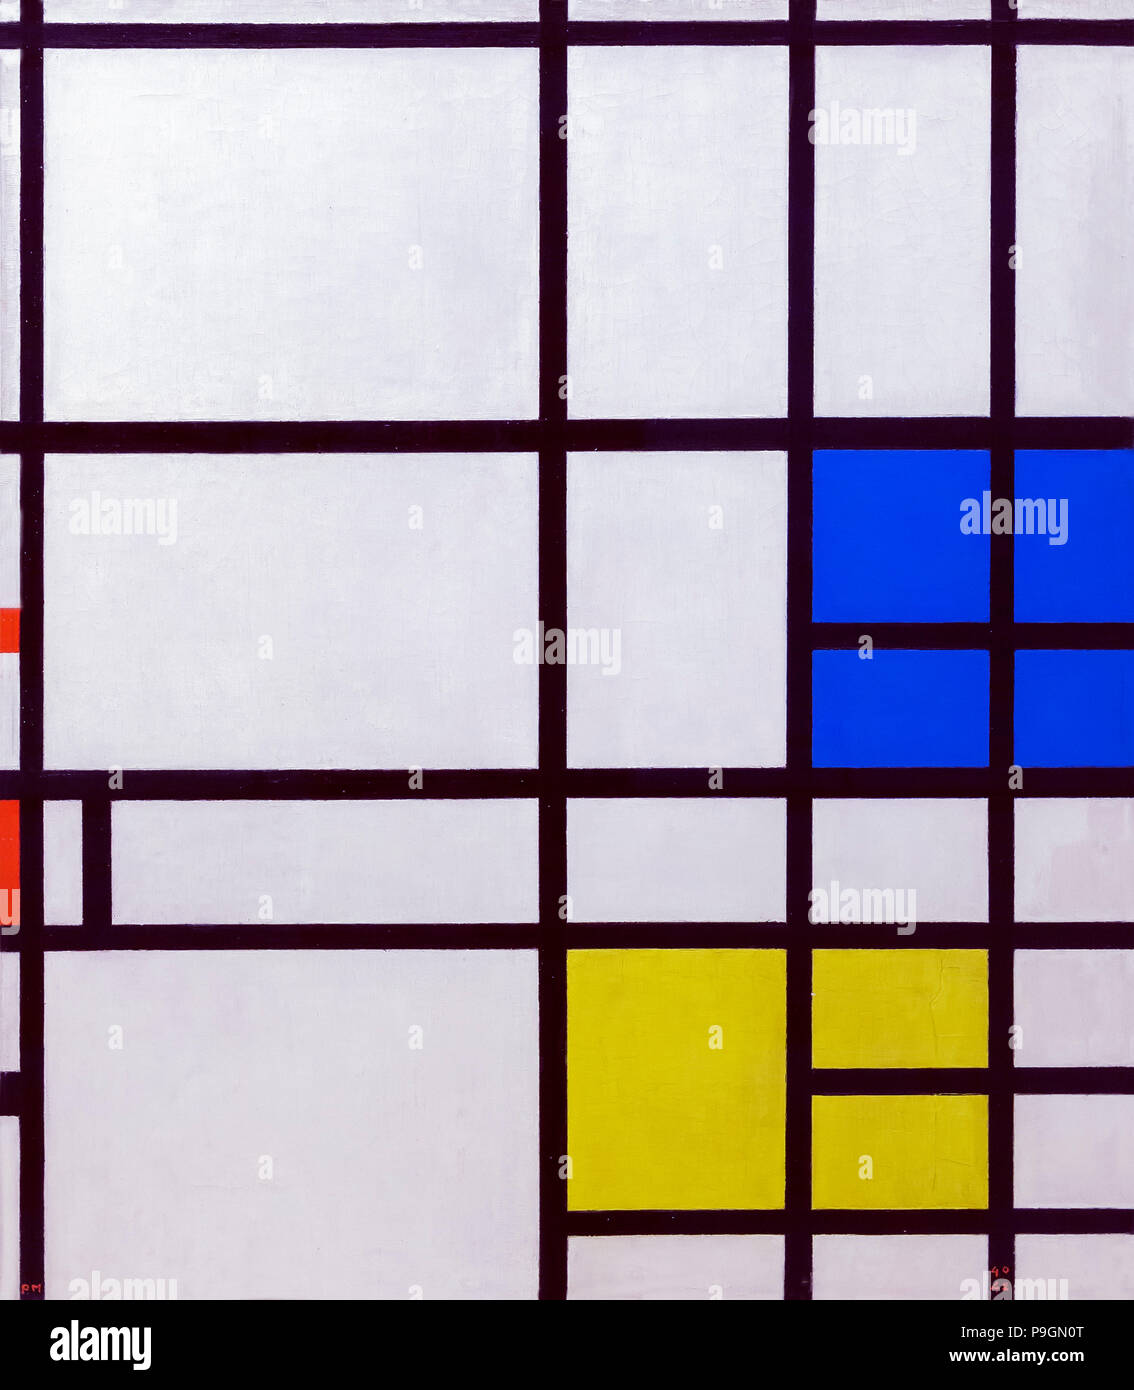 Composition no.11 avec bleu-rouge et jaune, Piet Mondrian, 1940-1942, Albright-KNOX Art Gallery, Buffalo, New York, États-Unis, Amérique du Nord Banque D'Images